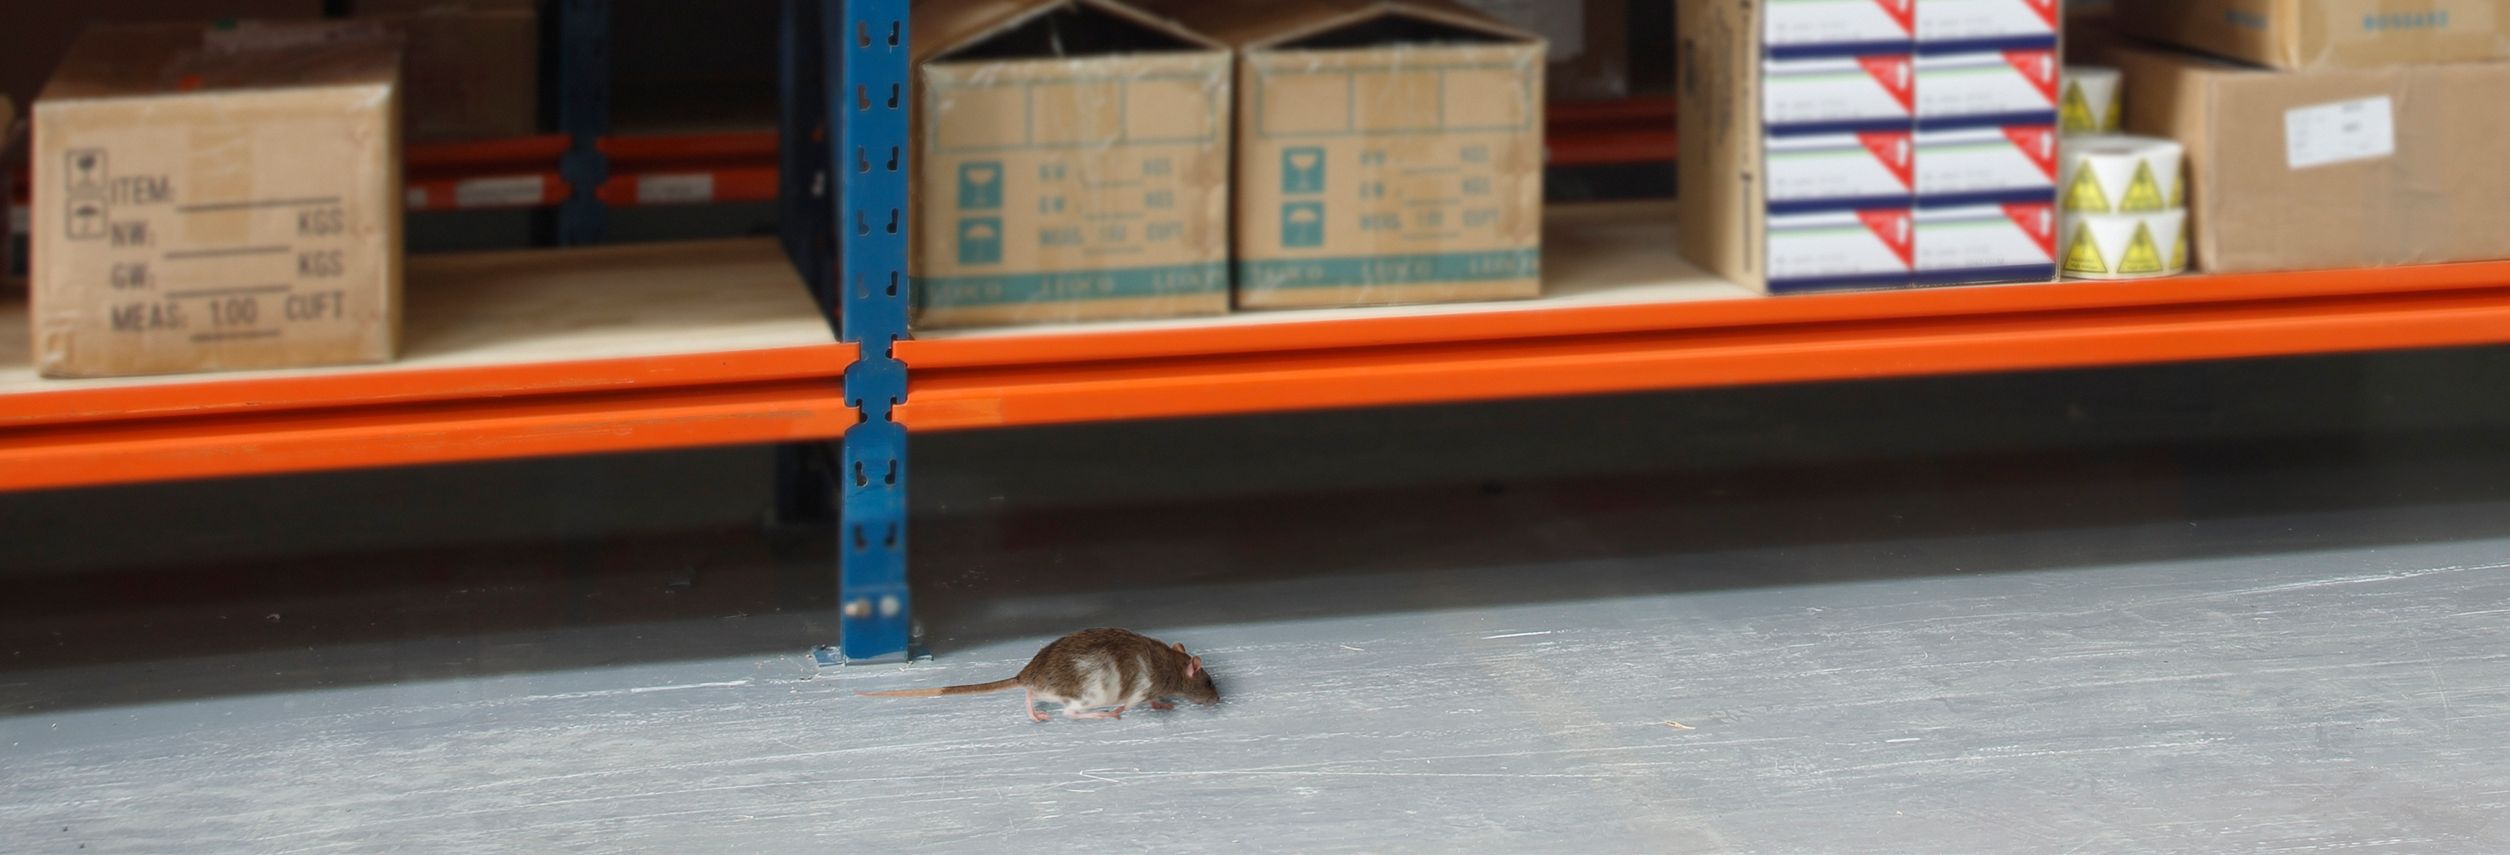 en términos de combustible instante Son efectivos los ultrasonidos para ratas y ratones? - Anticimex